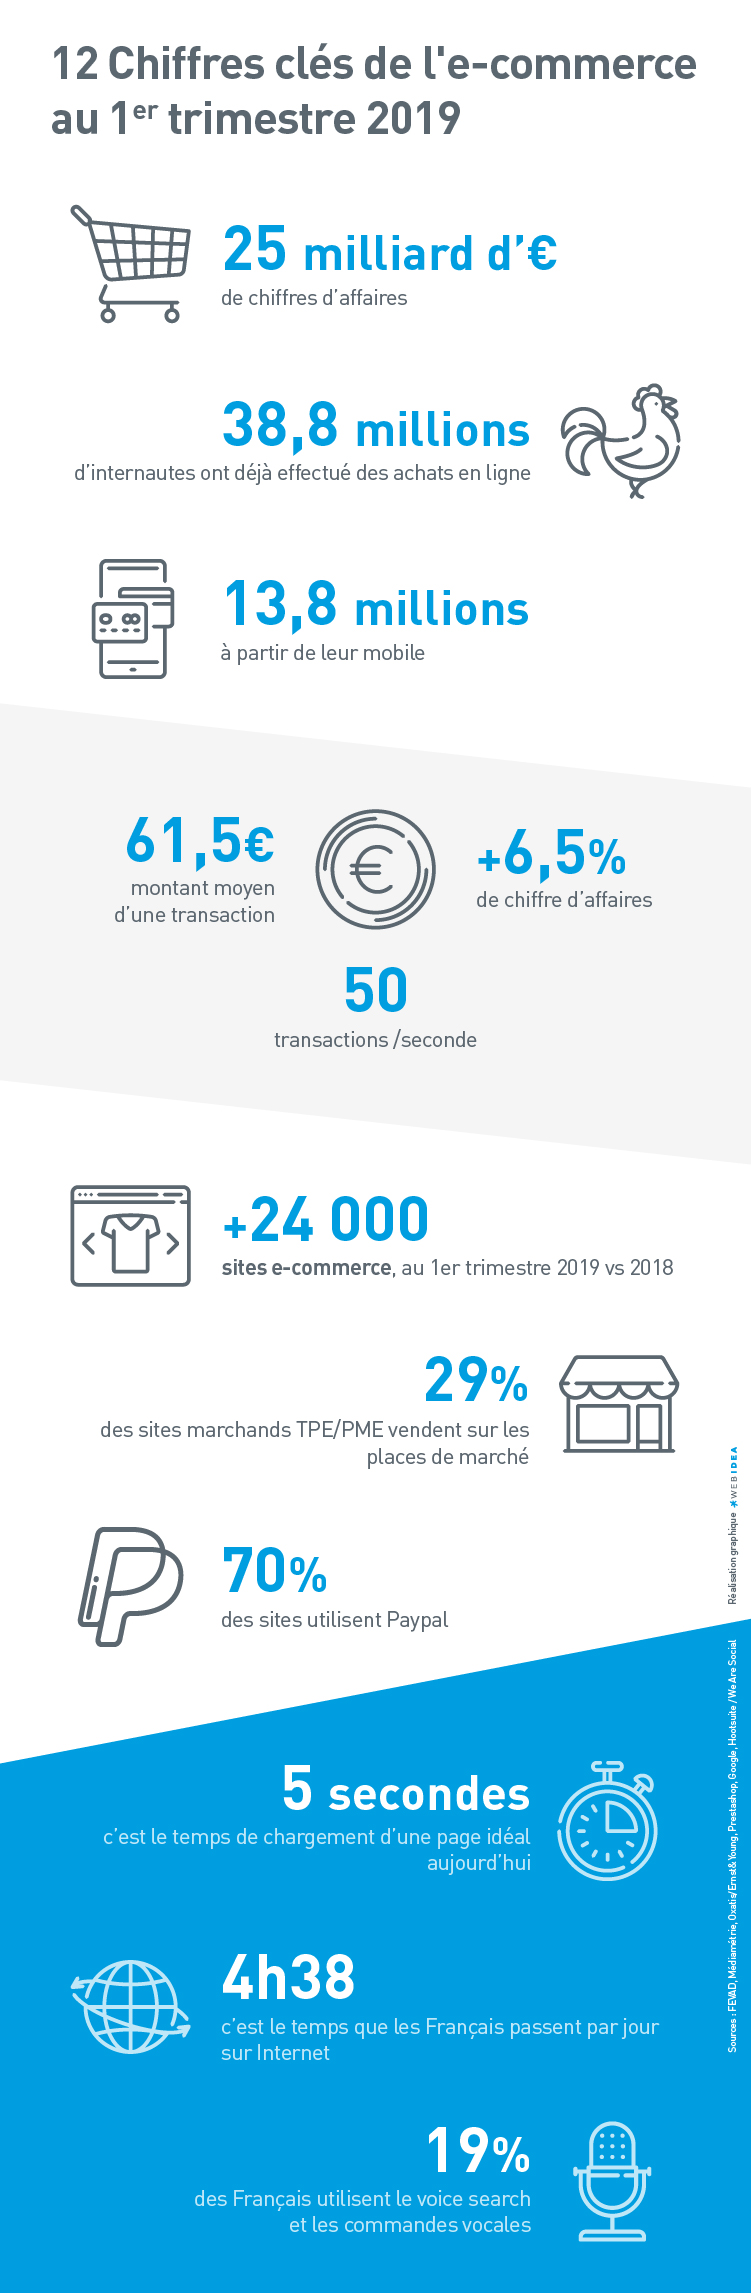 Infographie sur les chiffres clés de l'ecommerce en france au premier trimestre 2019